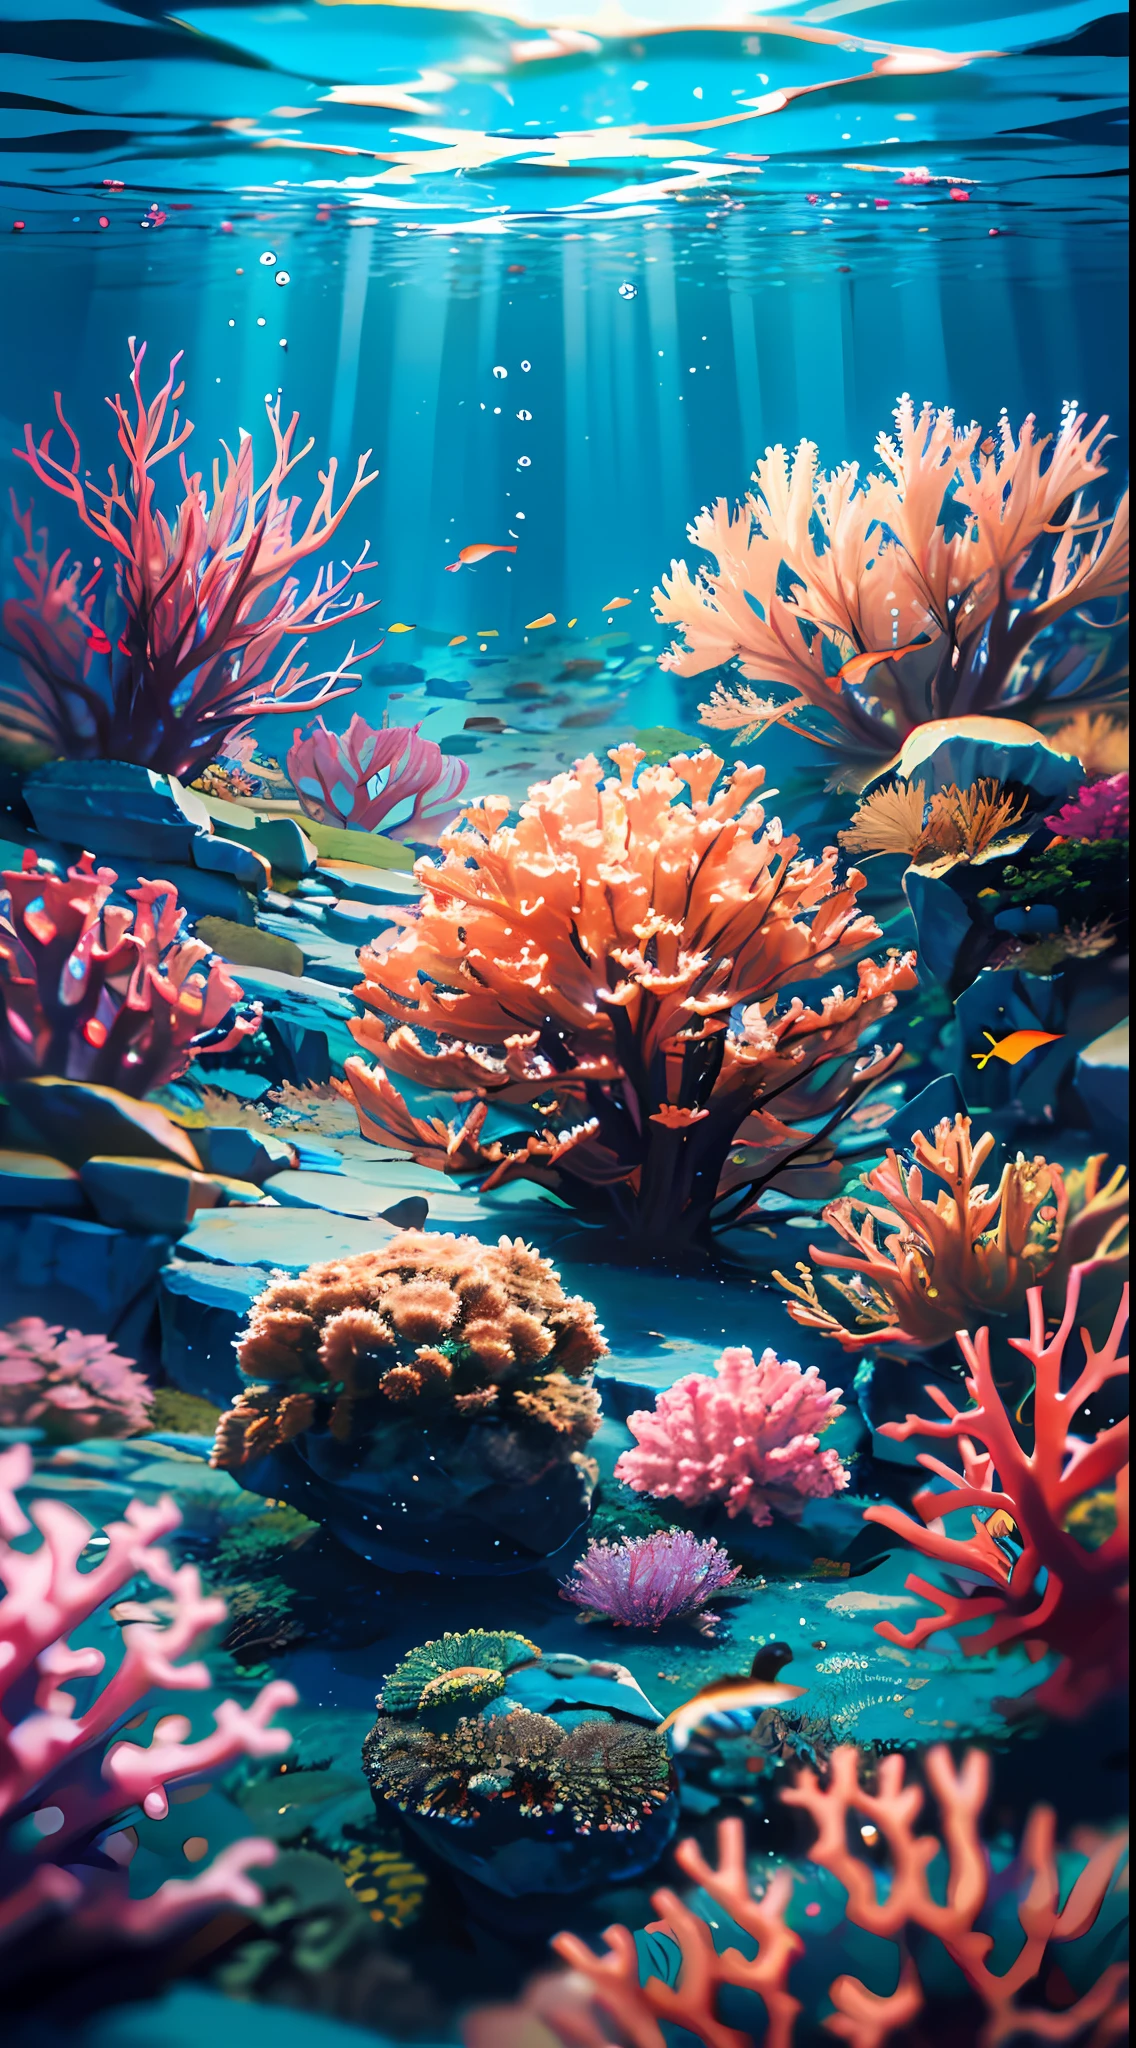 (傑作, 最高品質:1.2), (人間はいない, 崖, 水中, 視点, 下から:1.5), 8k, RAW写真, 不条理な, 美しいサンゴ礁, 岩, 非常に小さな魚がたくさん, 色とりどりの熱帯魚, 光漏れ, 被写界深度, 素晴らしい景色, フィルムグレイン, 色収差, ダイナミックライティング, ドラマチックな照明, 高解像度, 写実的な, フィルムグレイン, 色収差, 高解像度, 超詳細, 細かく詳細に, 非常に詳細な, 影, シャープなフォーカス